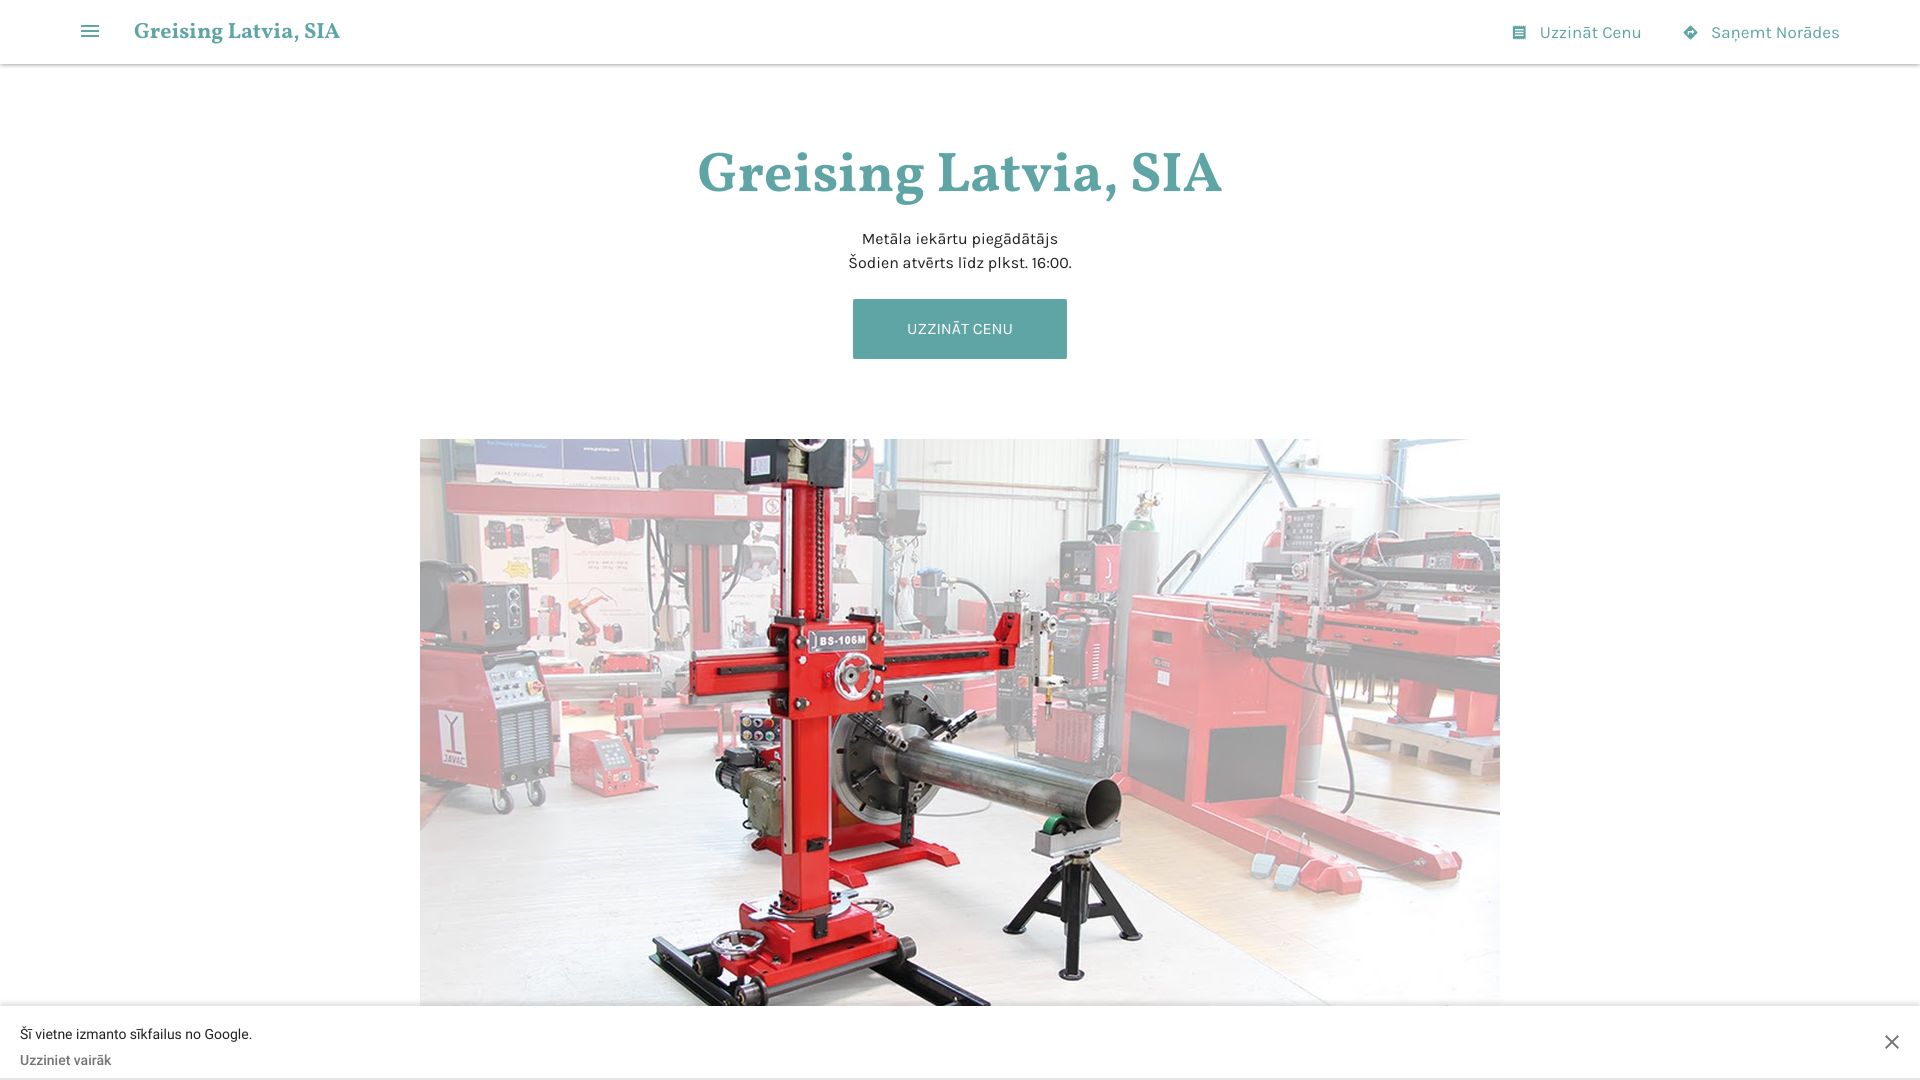 https://greising-latvia-sia.business.site/